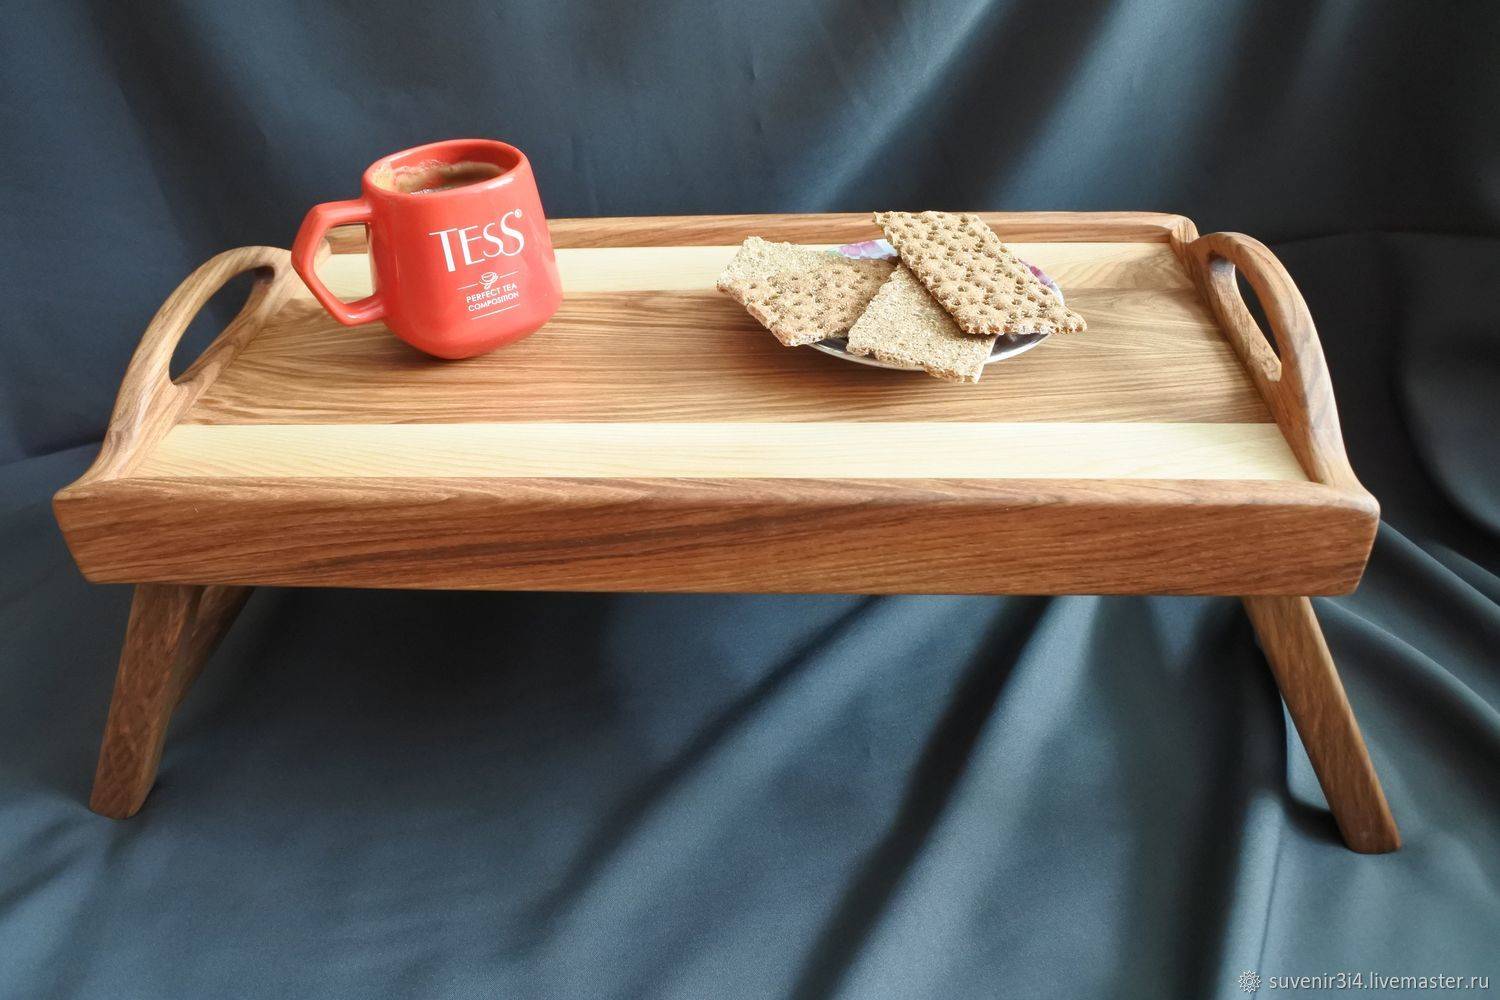 Как сделать удобный столик для завтрака в постель своими руками - iloveremont.ru